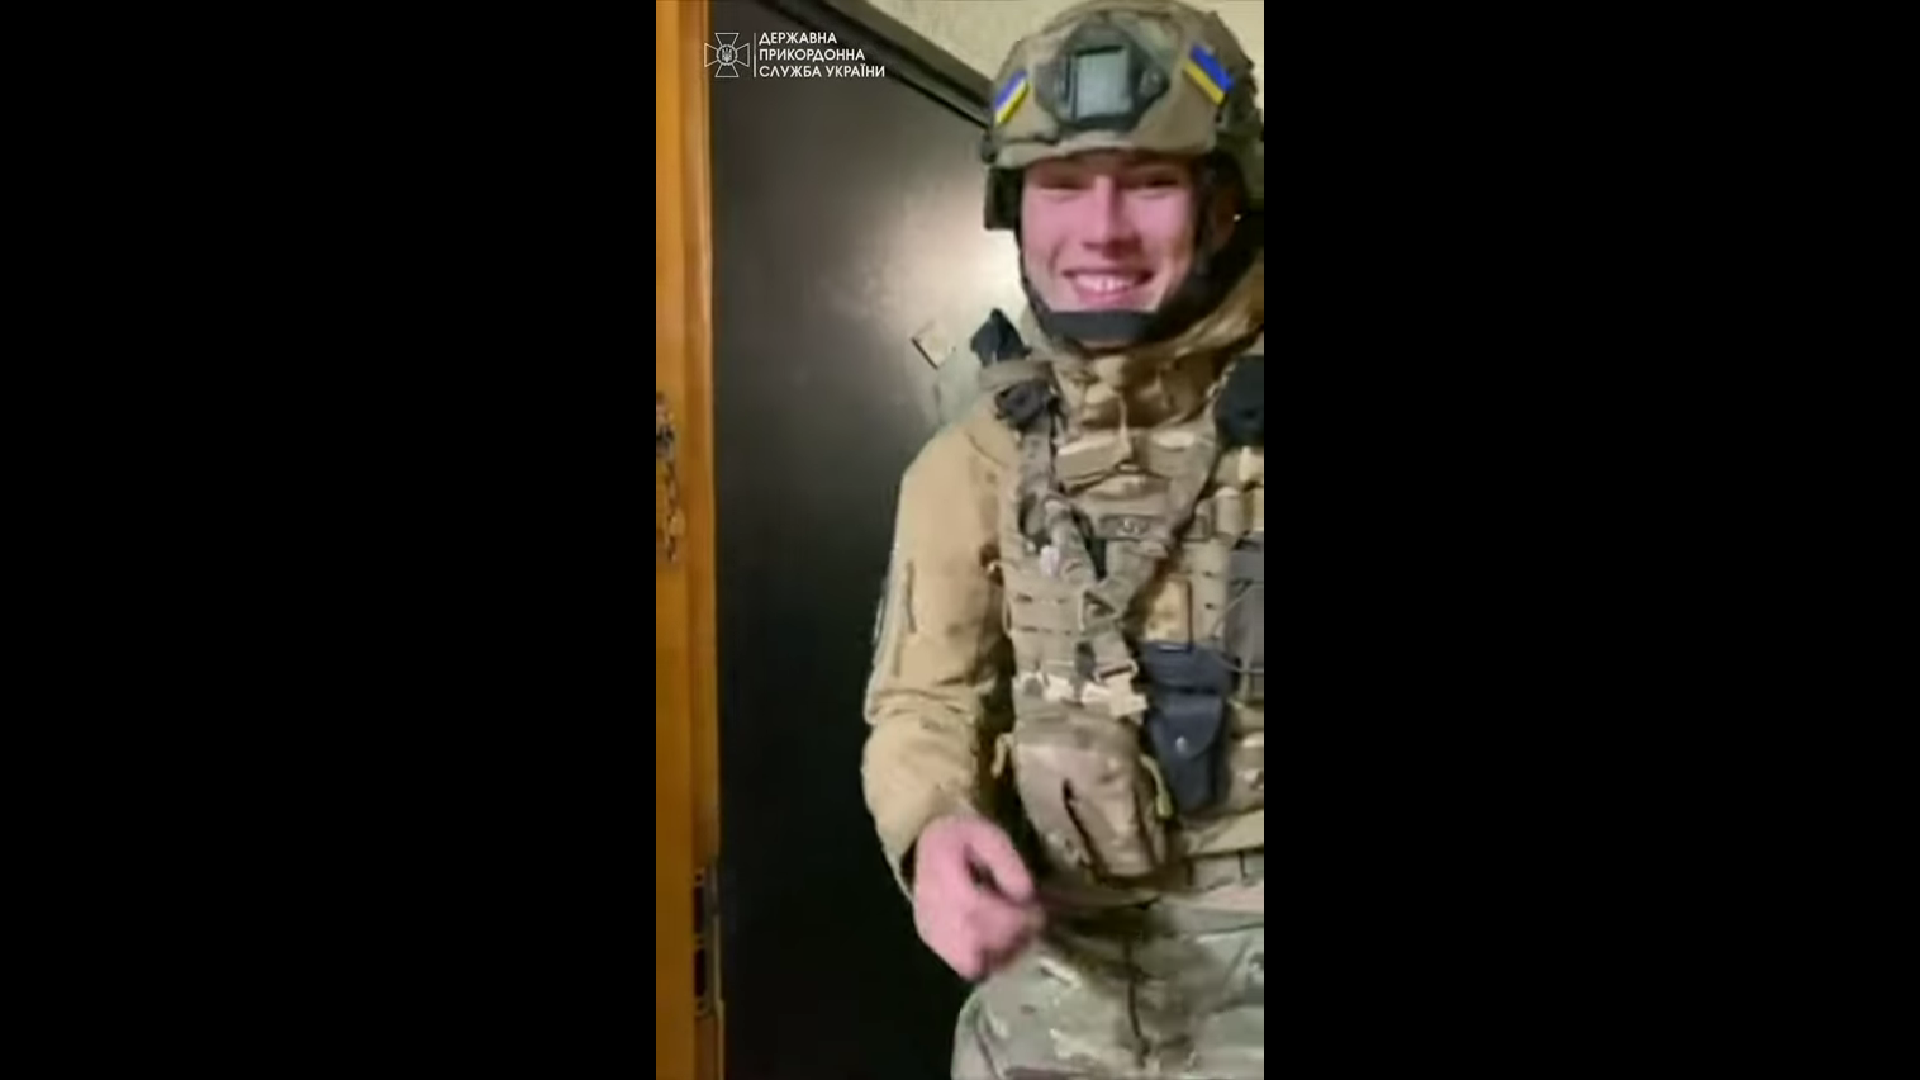 Подивіться на цю усмішку: з'явилося миле відео із захисником України, який повернувся додому